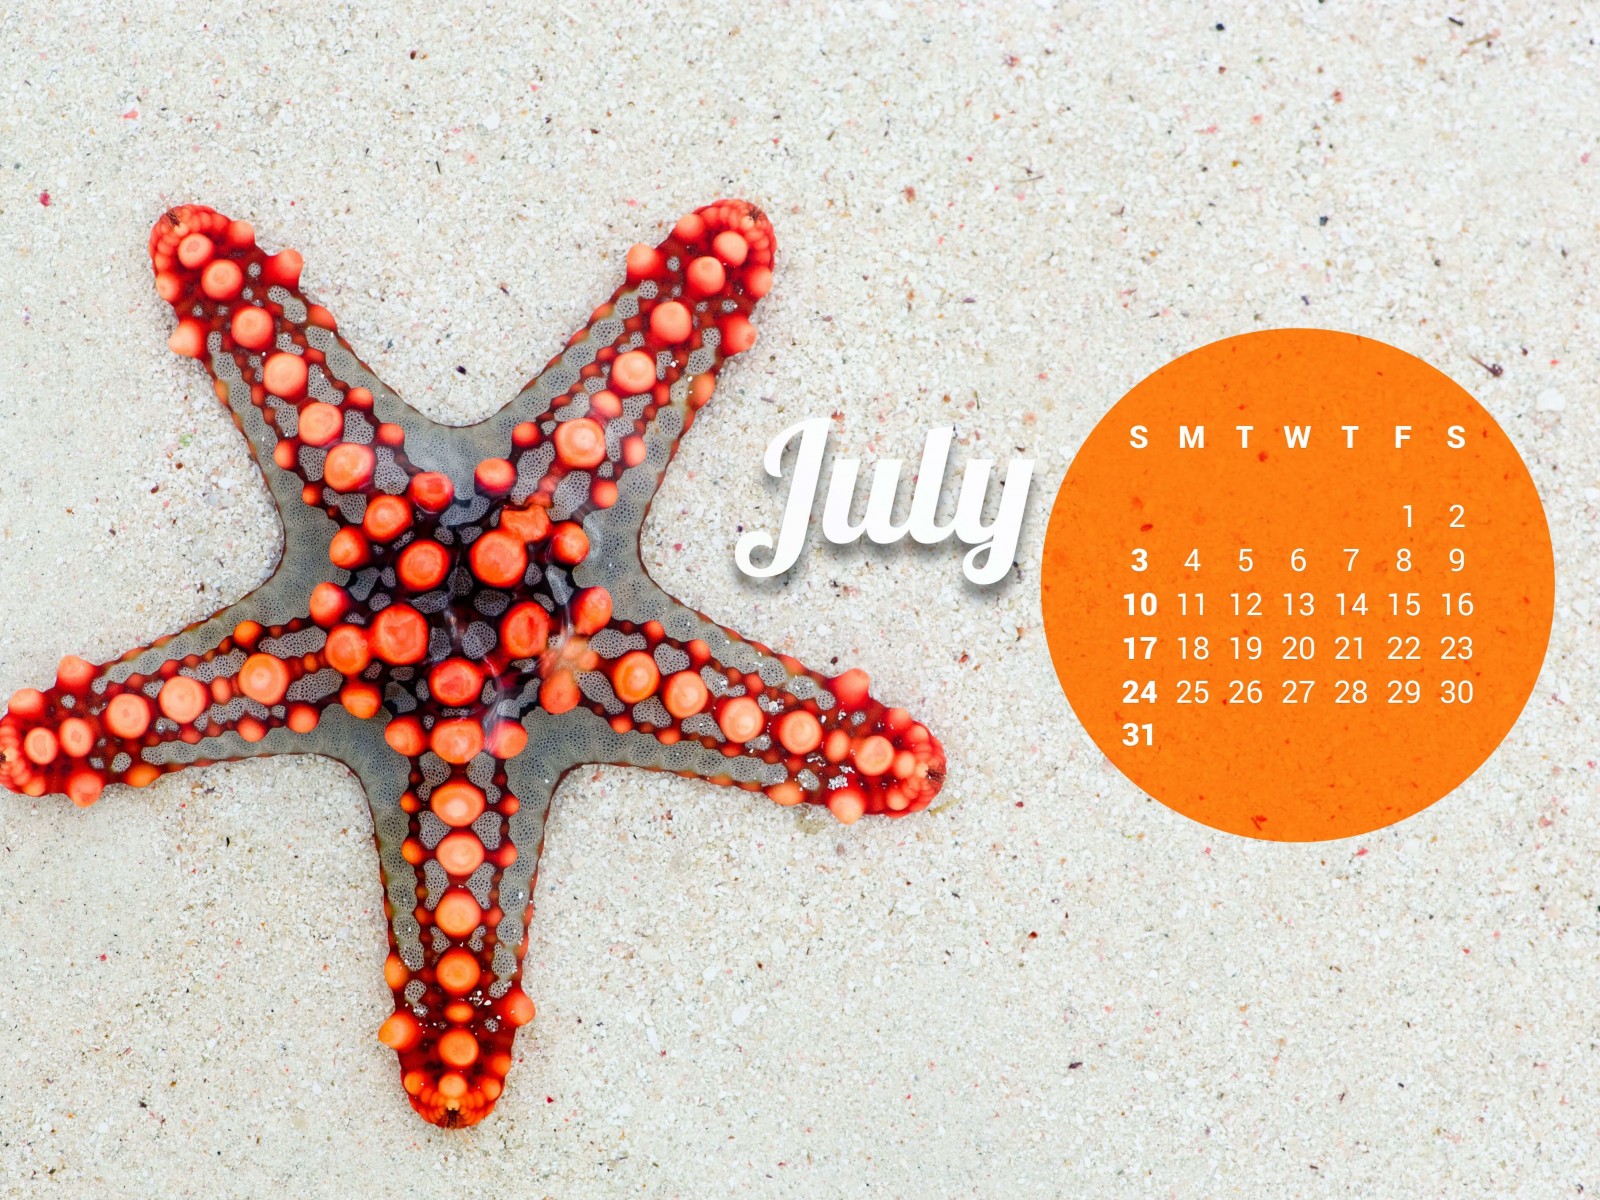 July 2016 Calendar Wallpaper for Desktop 1600x1200